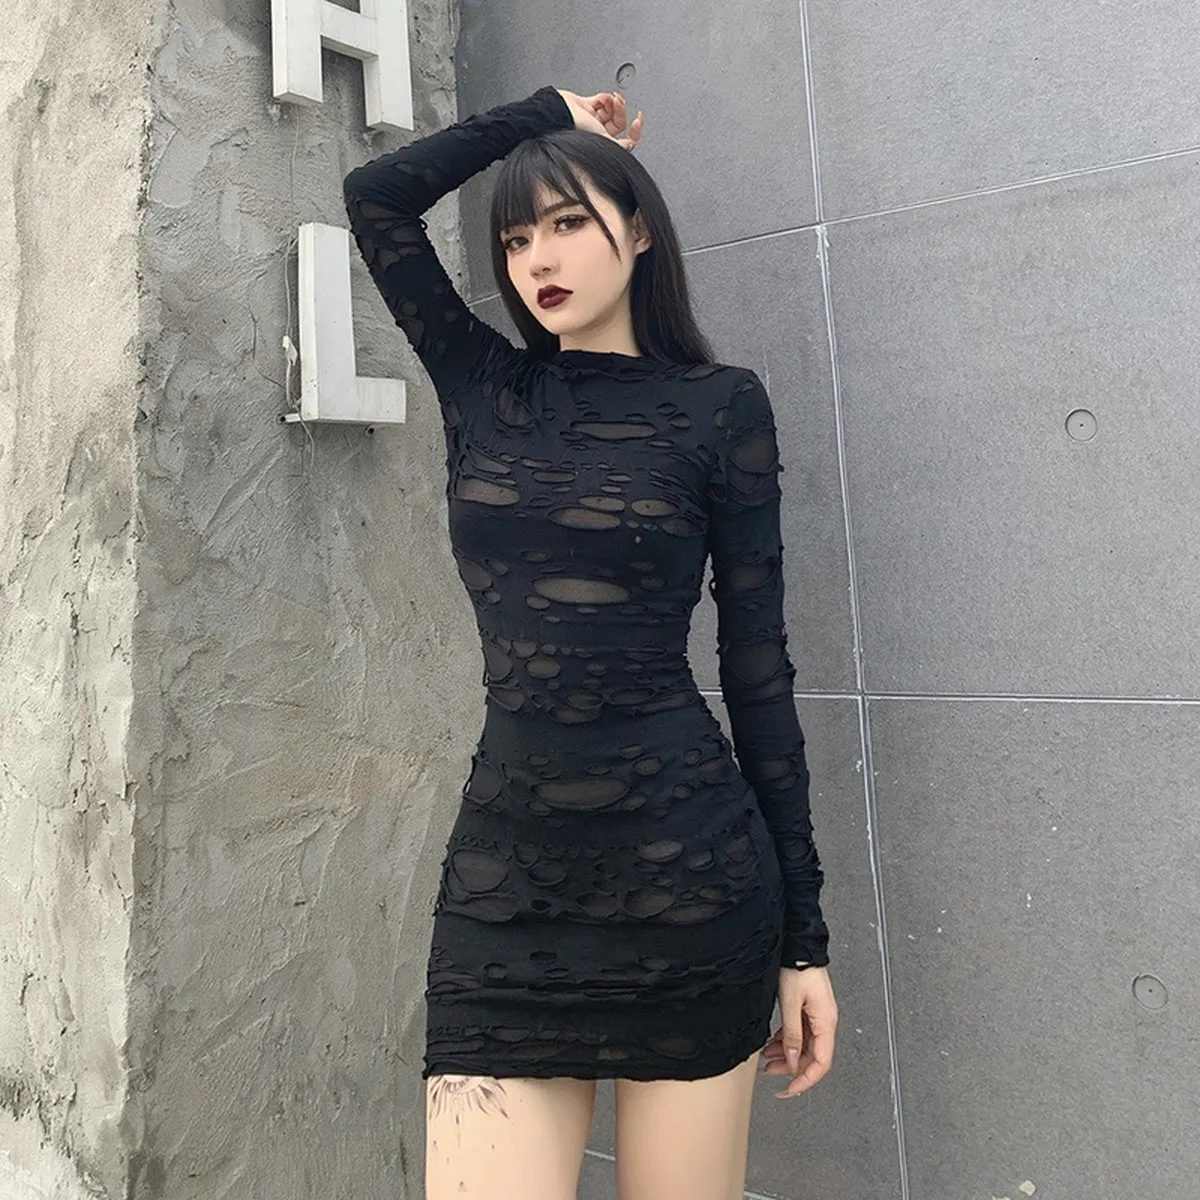 Tanie damskie odzież odzieżowa helisopus nowy gotycki czarny mini sukienka streetwear rocka punkowca pusta retro wysoki talia długi rękaw Bodycon Par ...